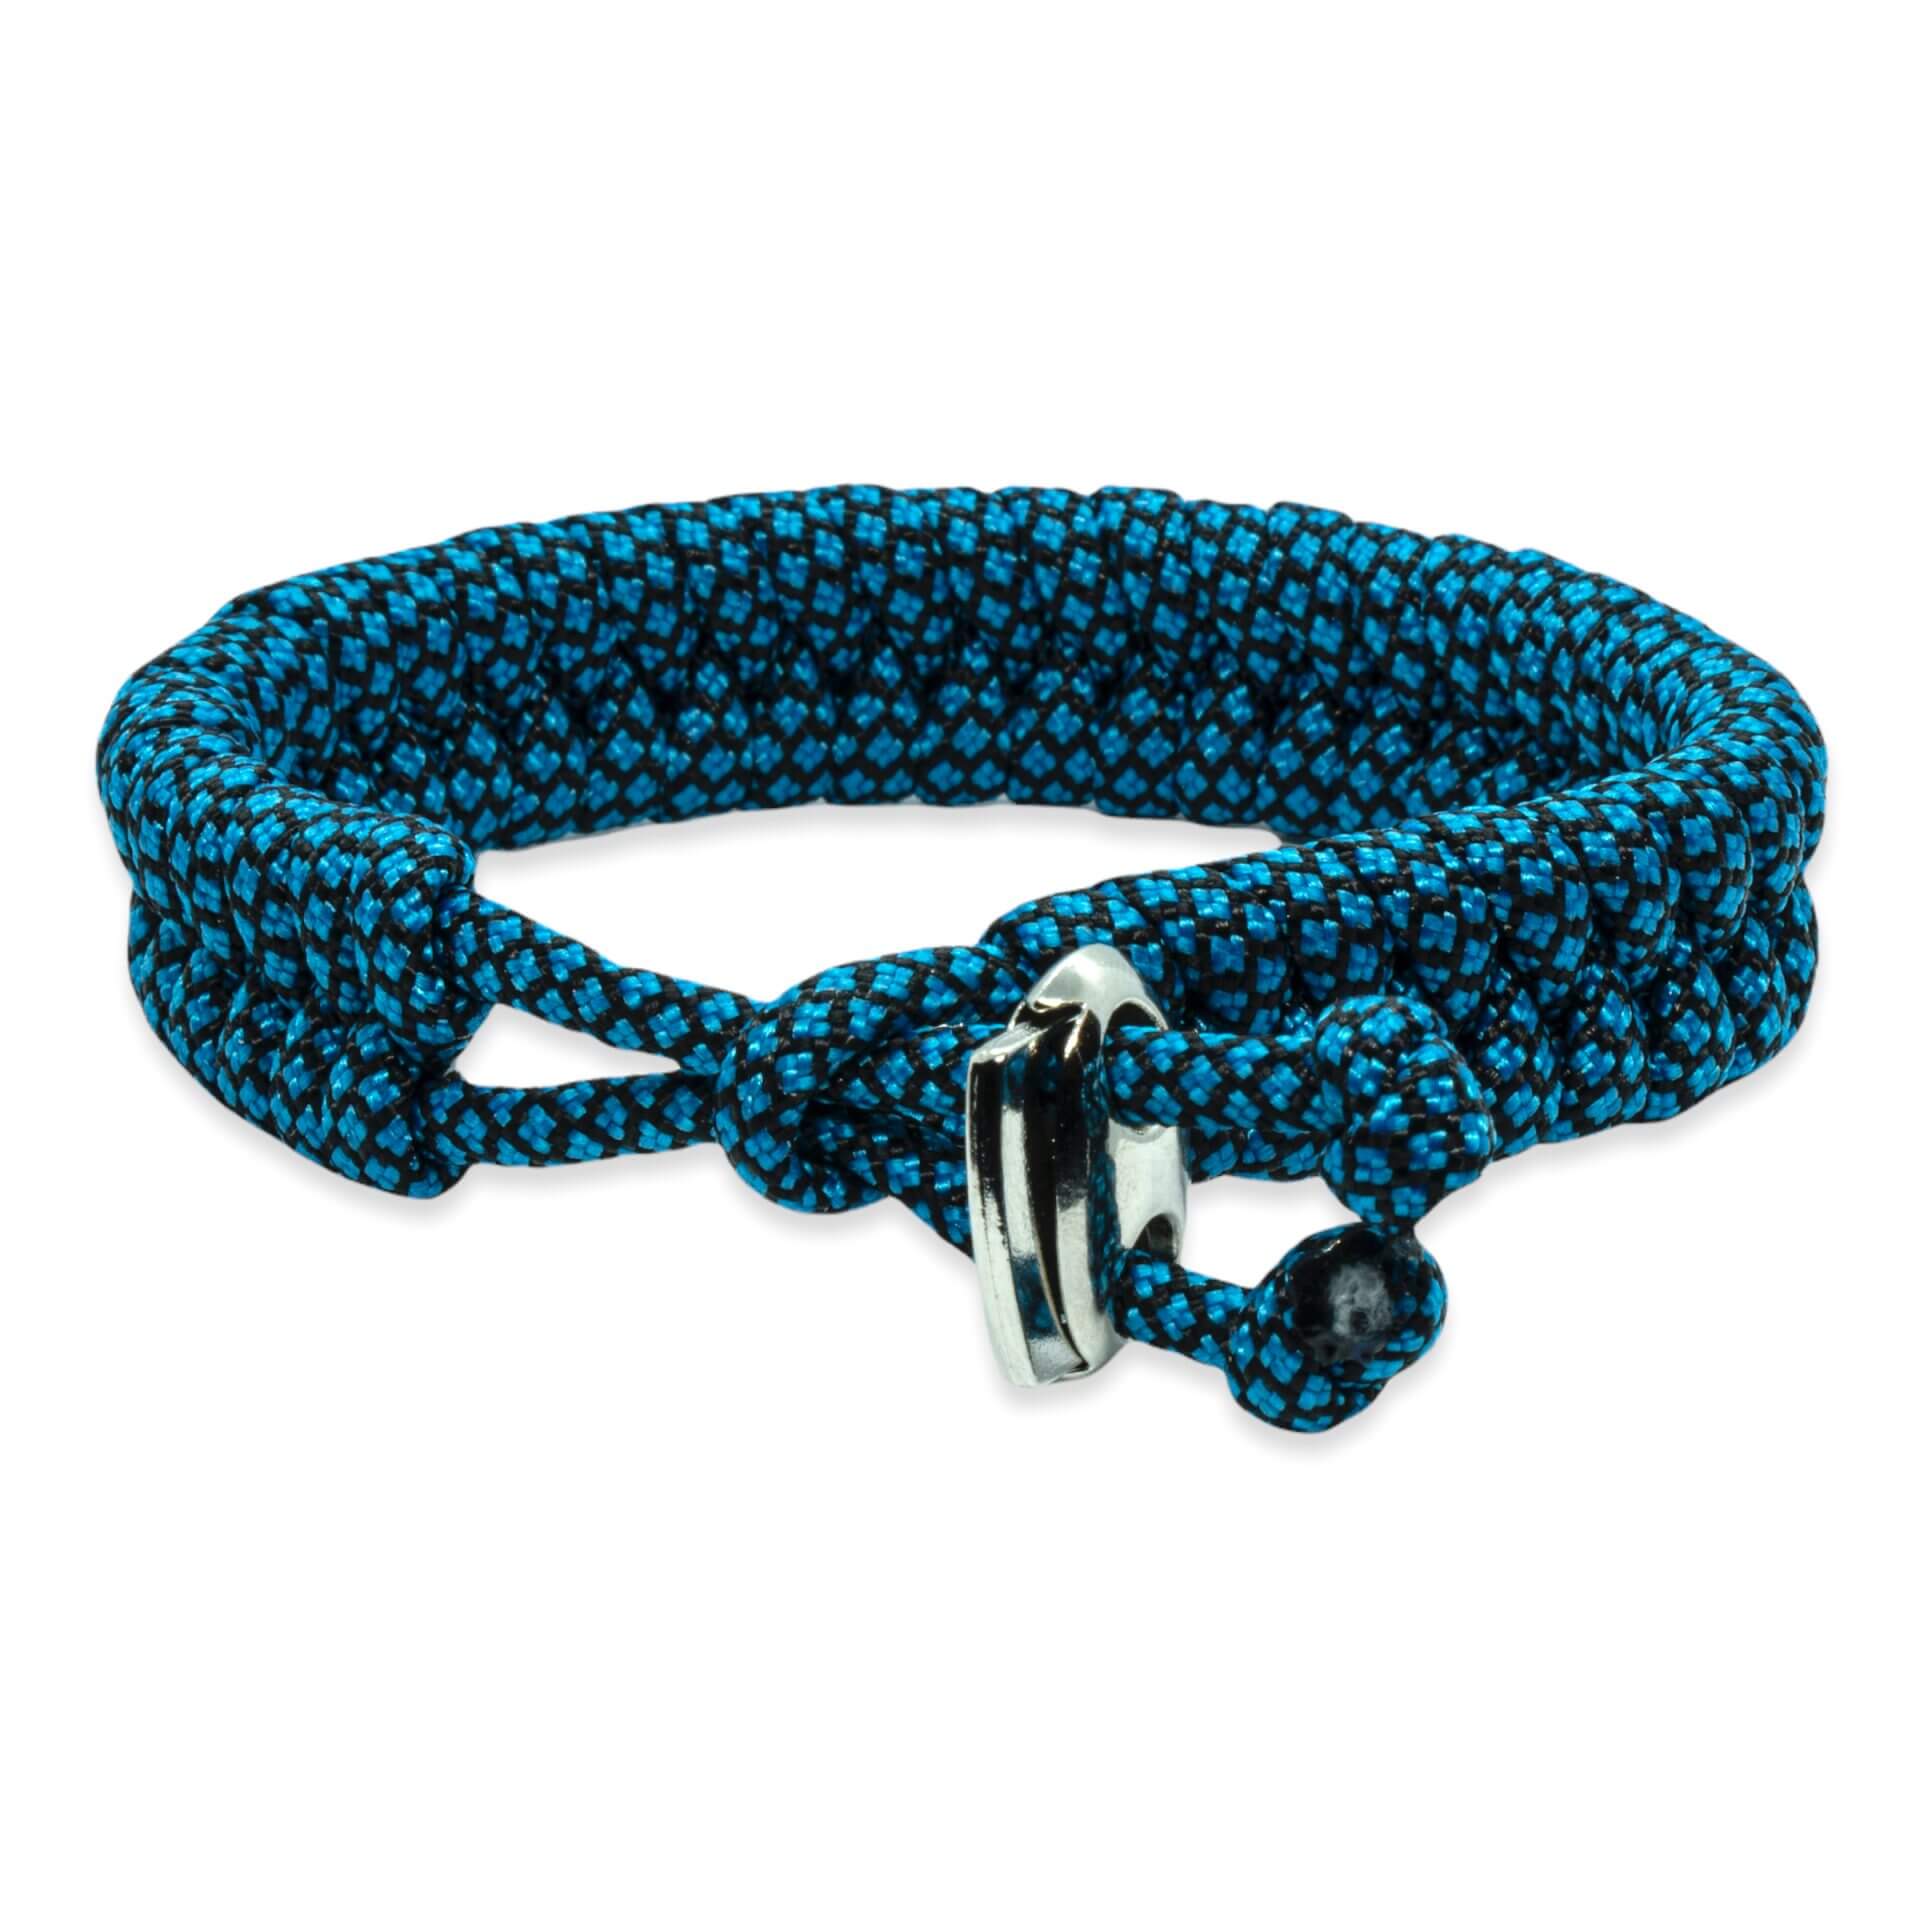 Swedish tail bracelet - Blue black rope colors